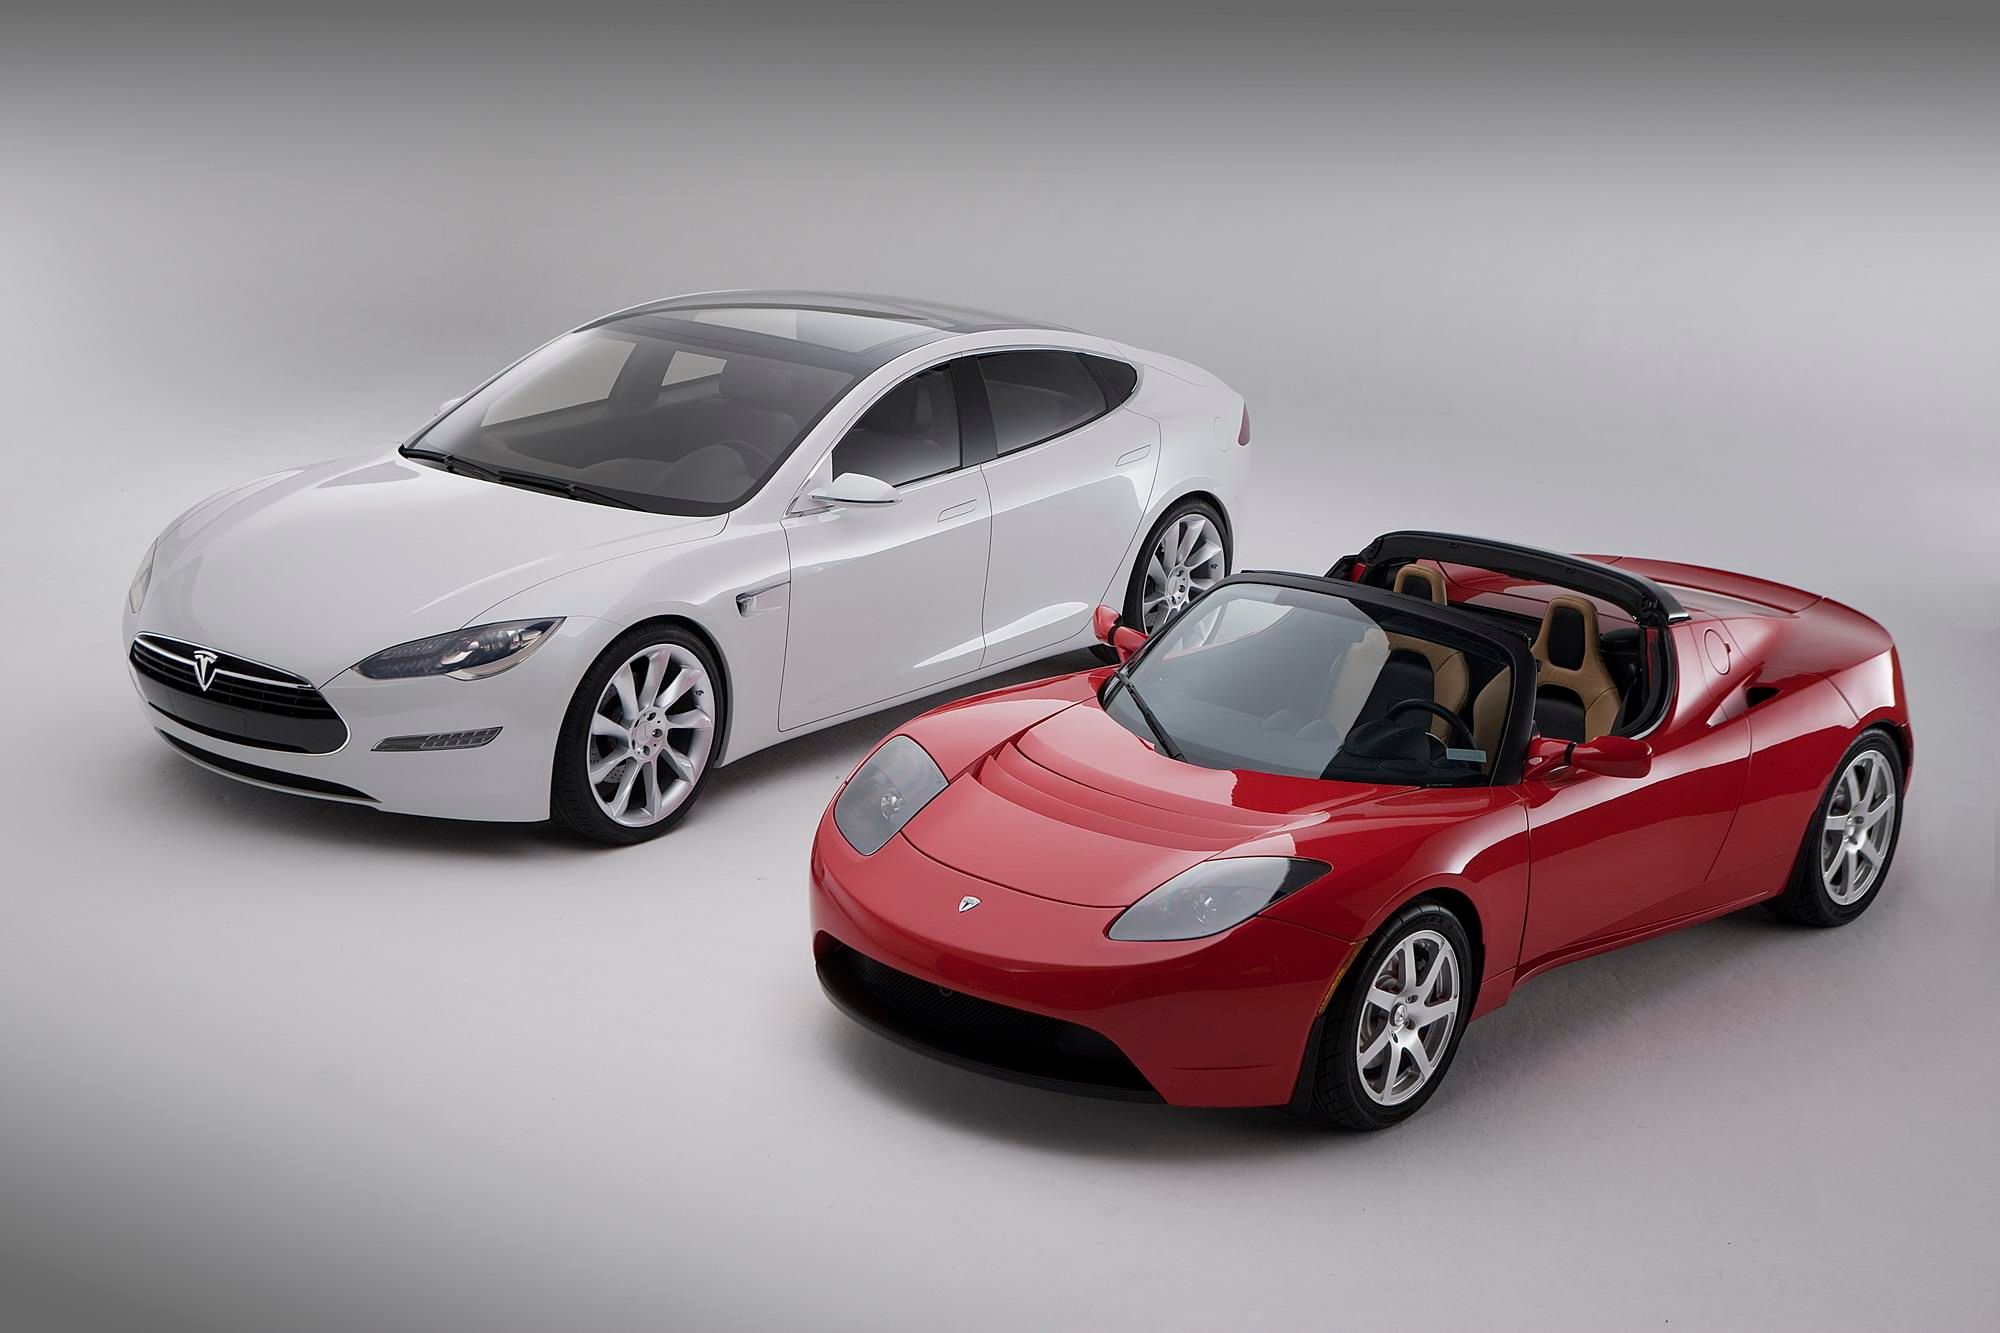 Tesla Model S / Roadster